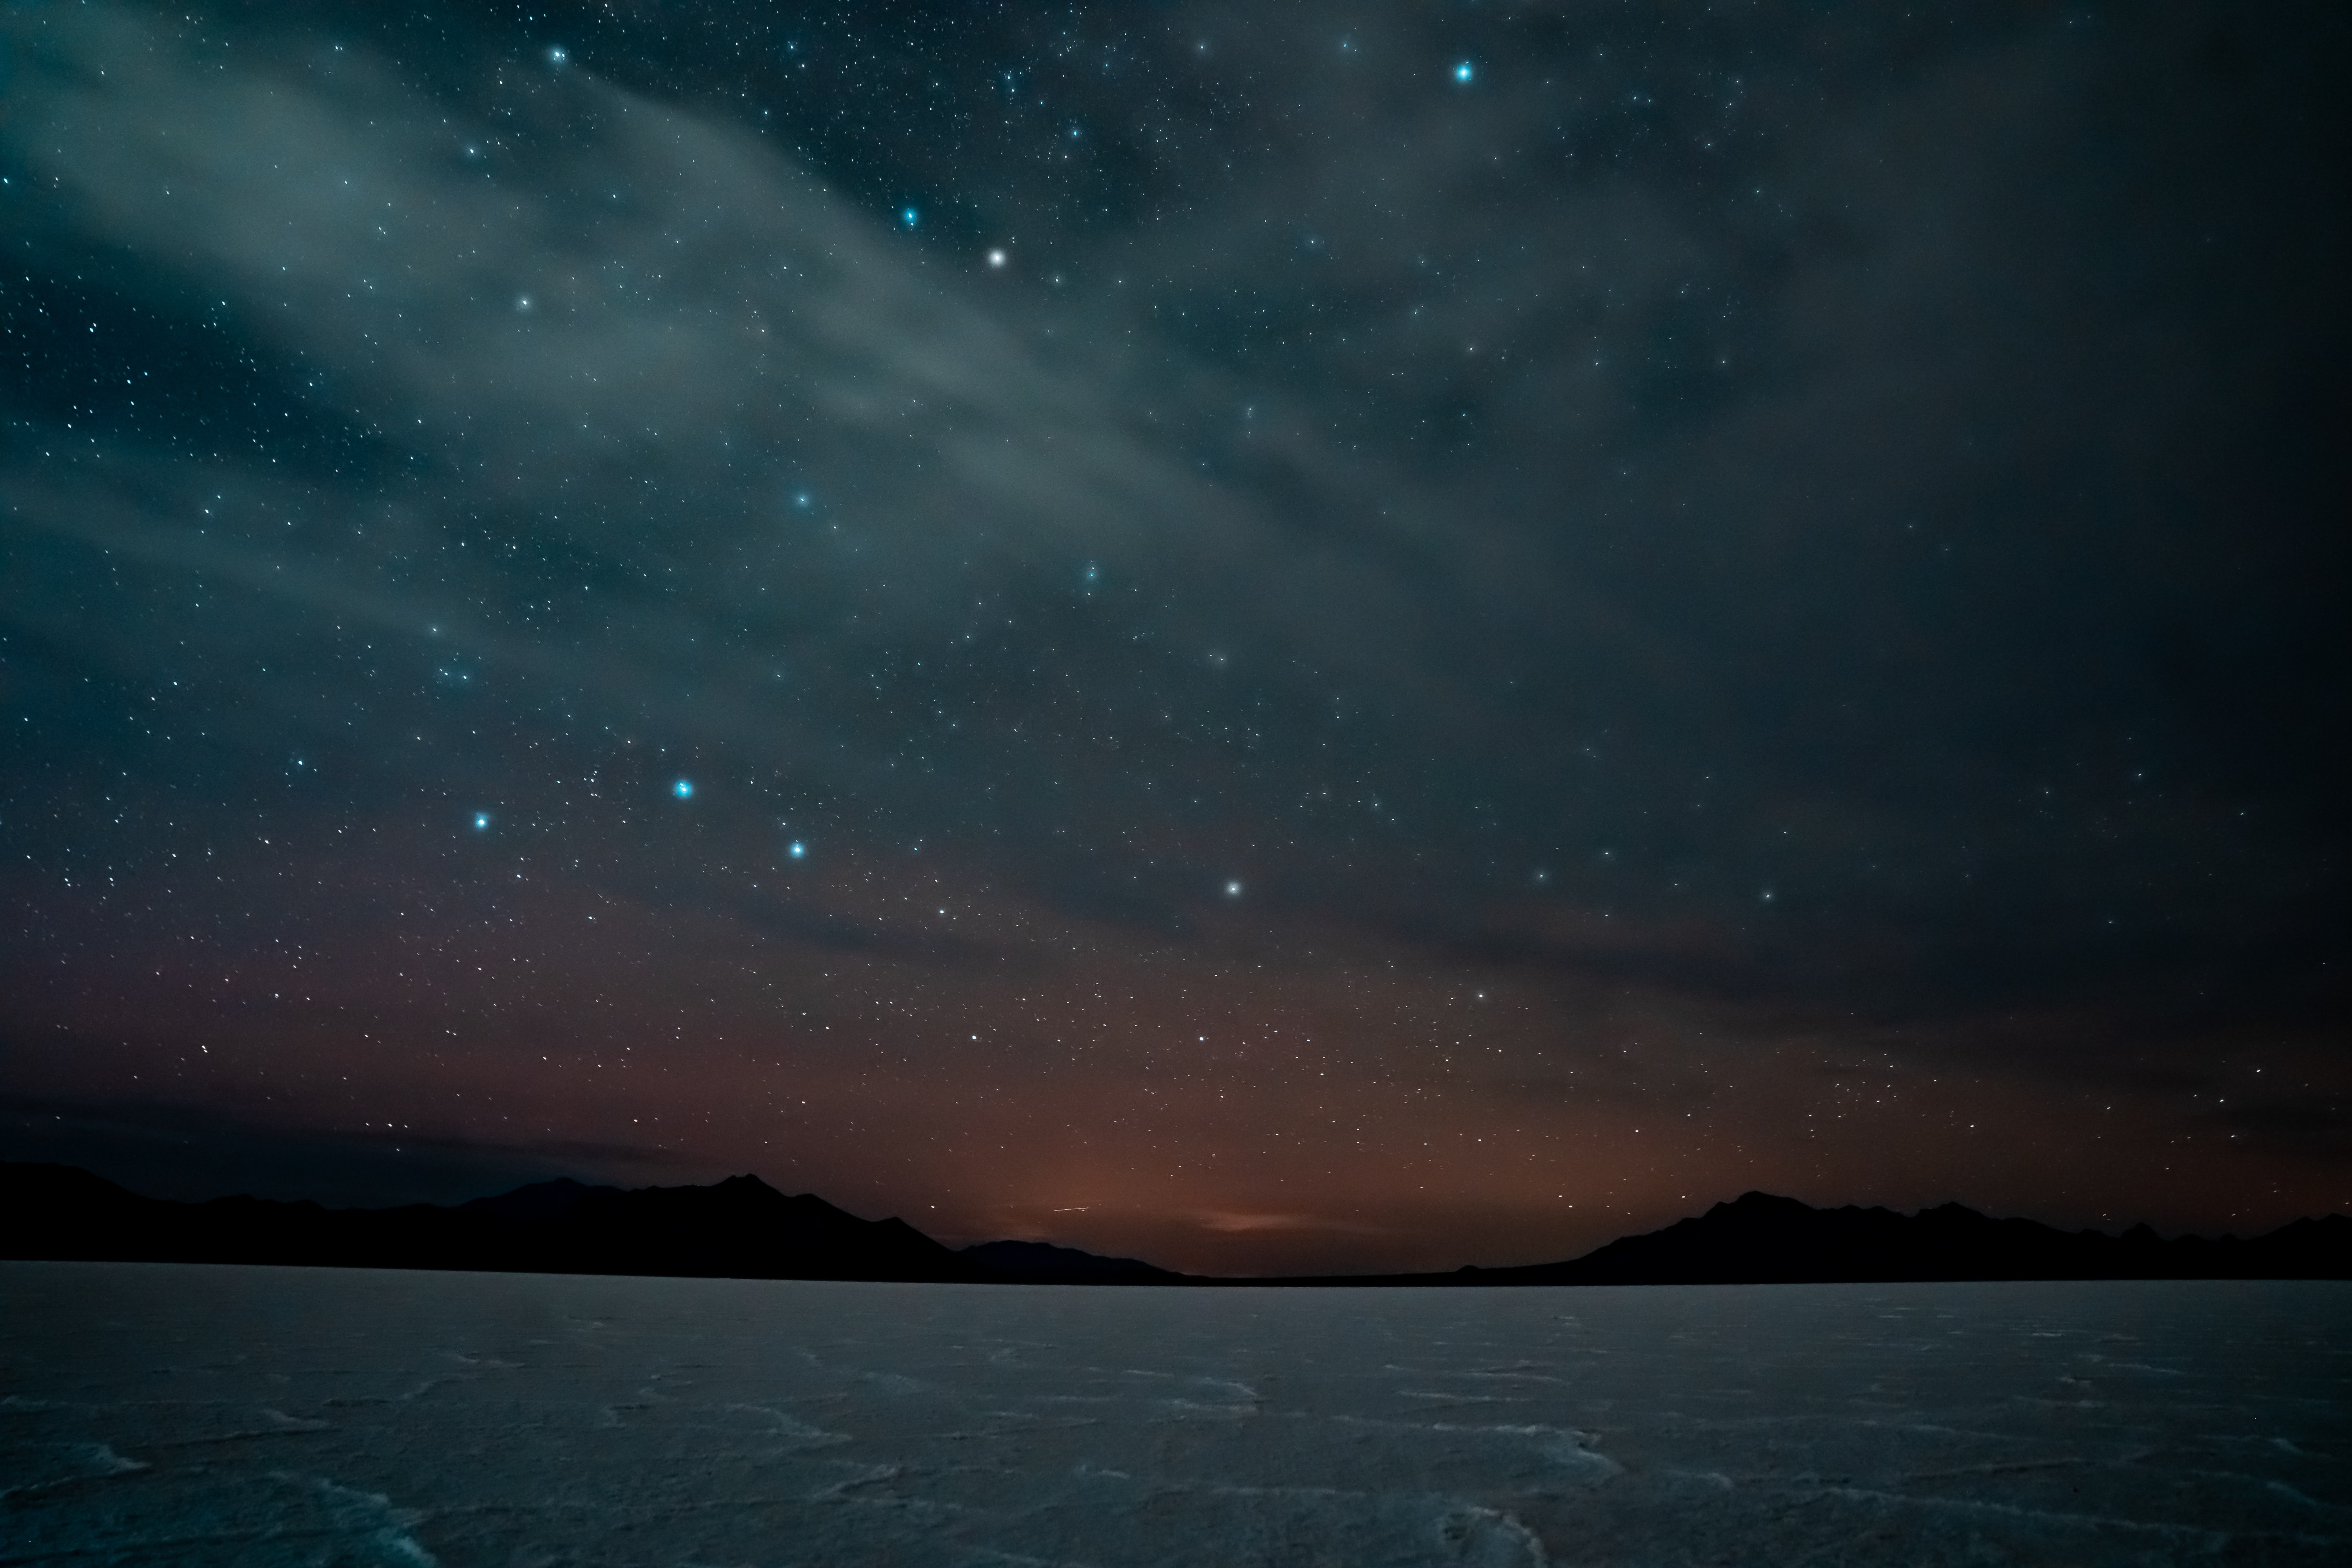 Đêm đầy sao (Starry night): Đêm đầy sao mang đến vẻ đẹp thần thánh và quyến rũ cho những người yêu thiên nhiên. Hãy khám phá những vì sao đang lấp lánh trên bầu trời trong những hình ảnh đầy sức hút.